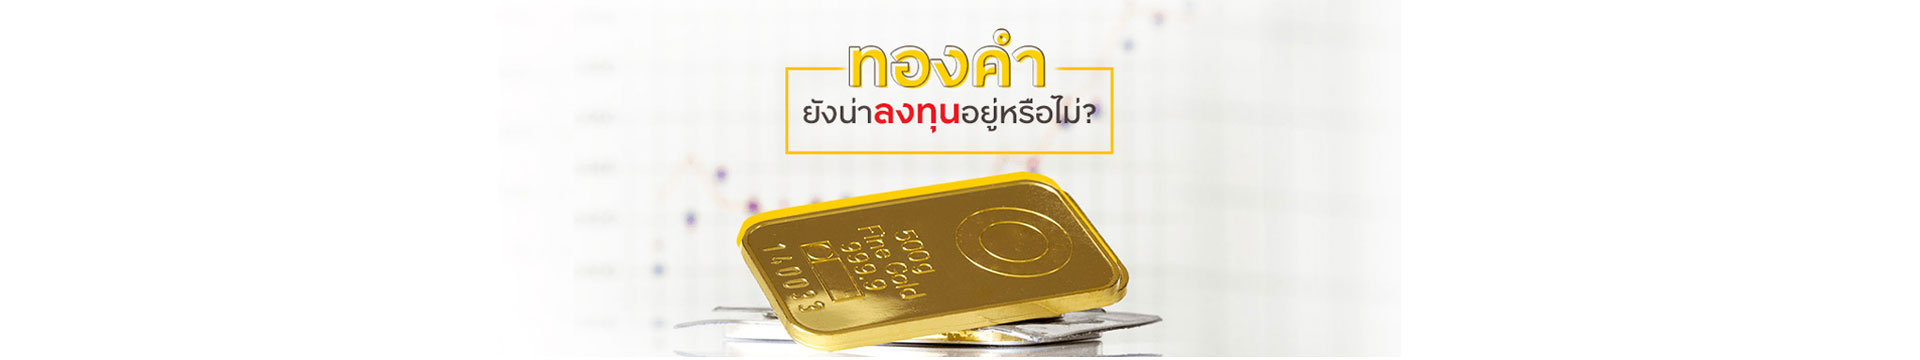 ทองคำยังน่าลงทุนอยู่หรือไม่?